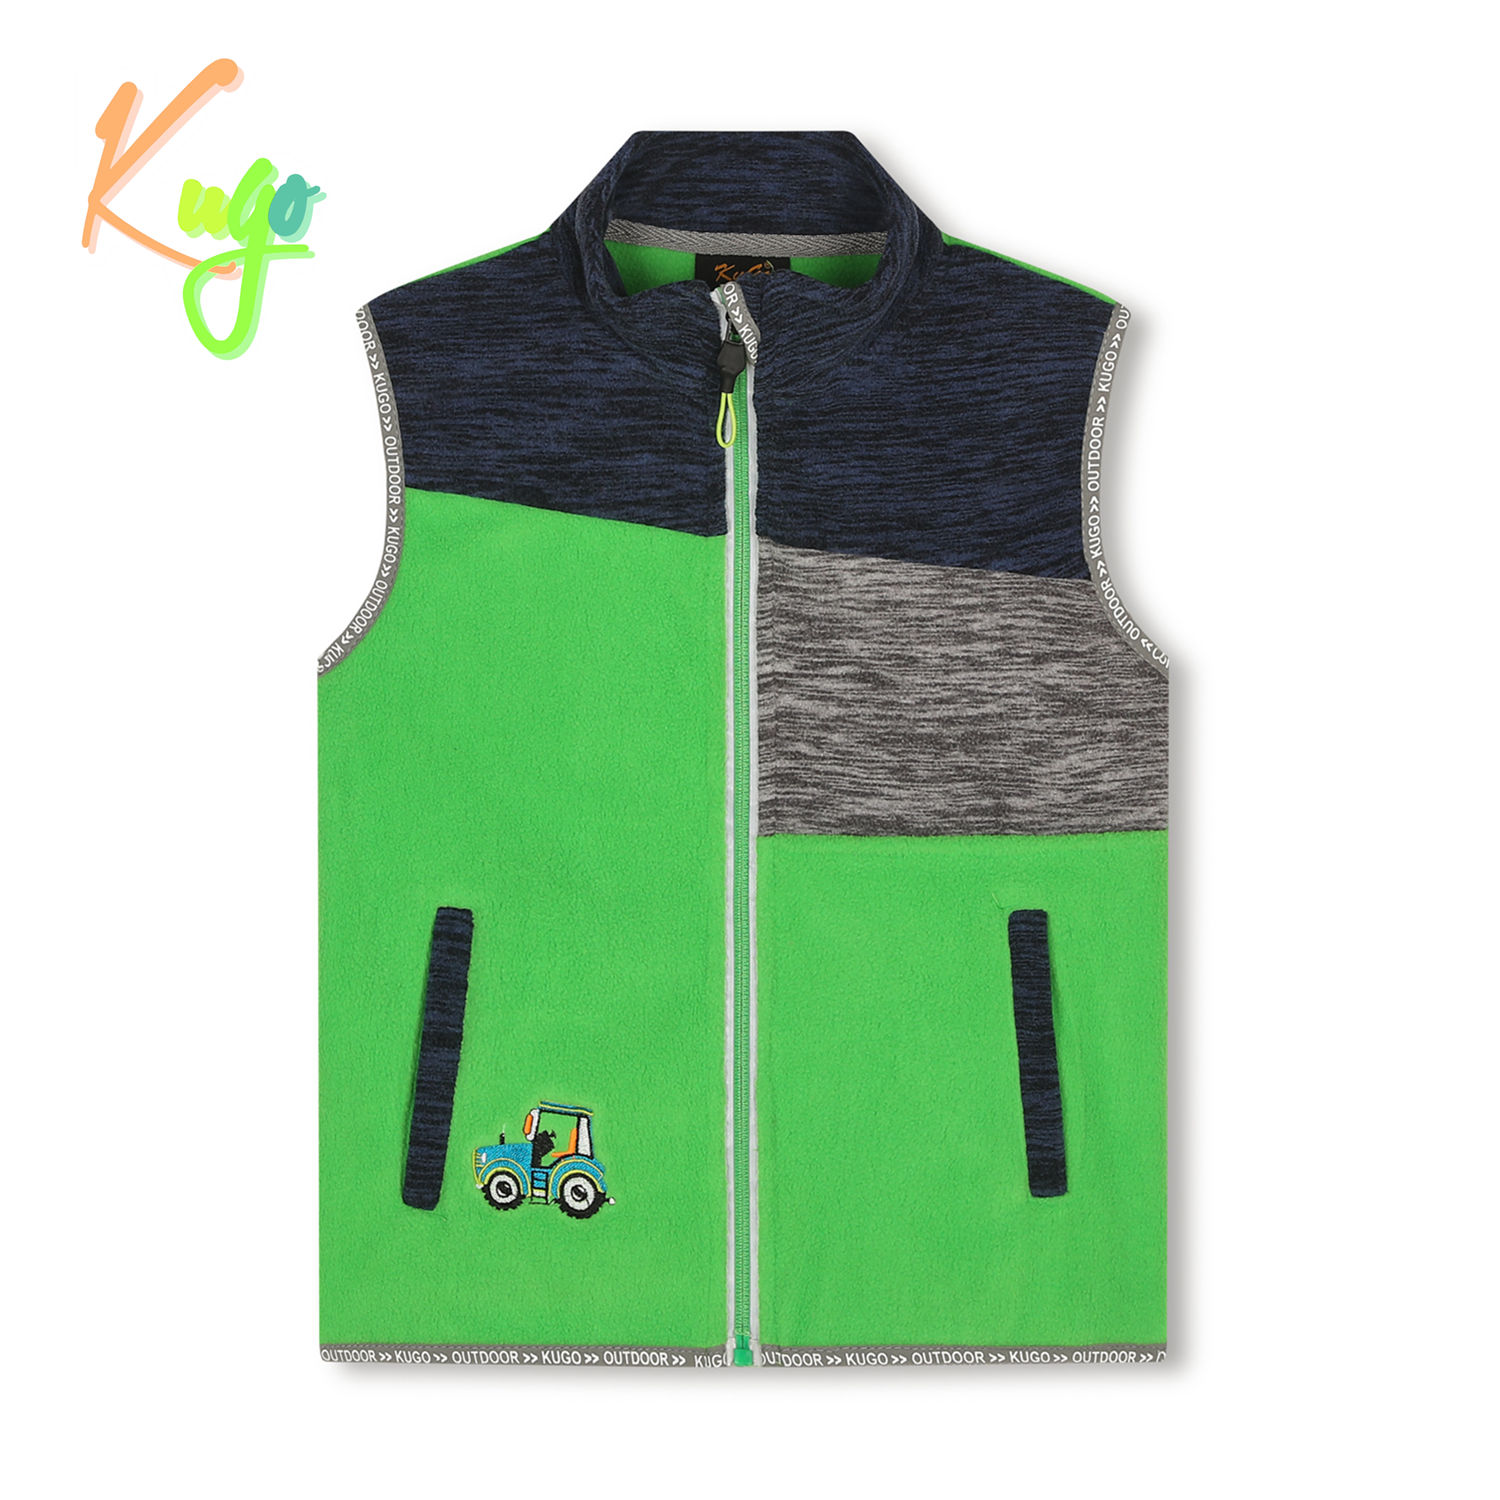 Chlapecká flísová vesta- KUGO FM8789, zelená Barva: Zelená, Velikost: 116